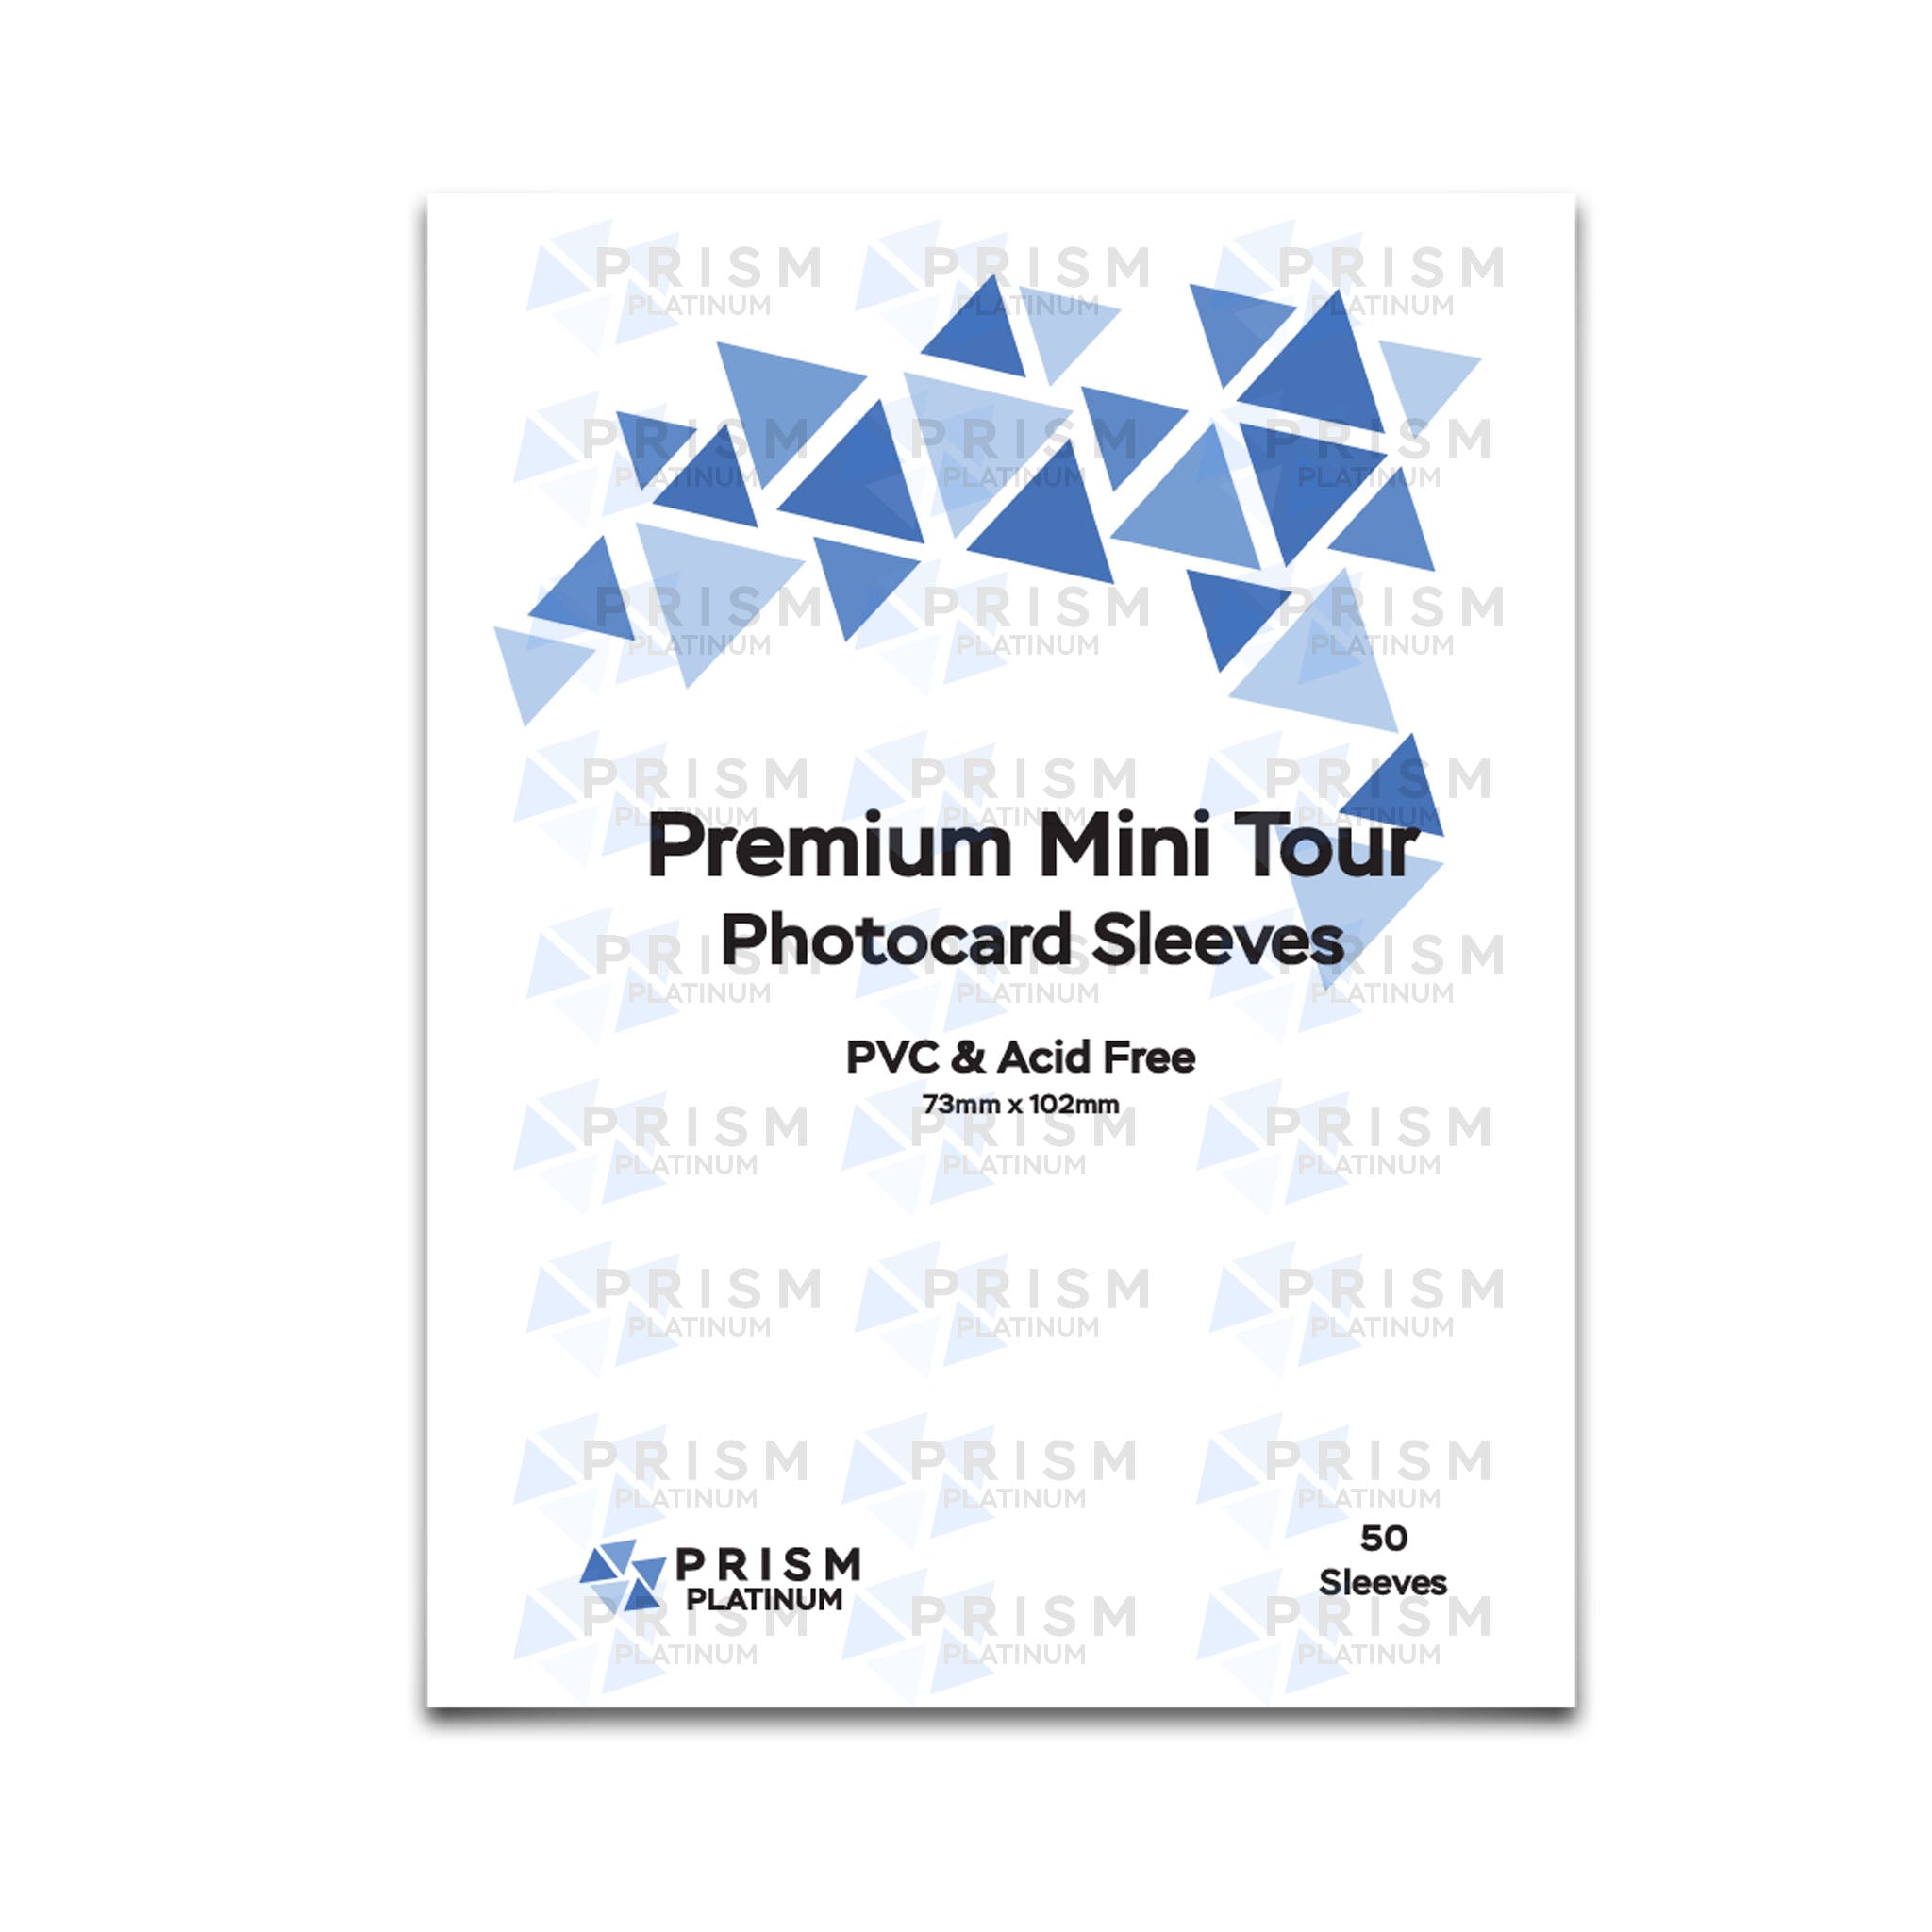 Premium Mini Tour Photocard Sleeves - Prism Platinum